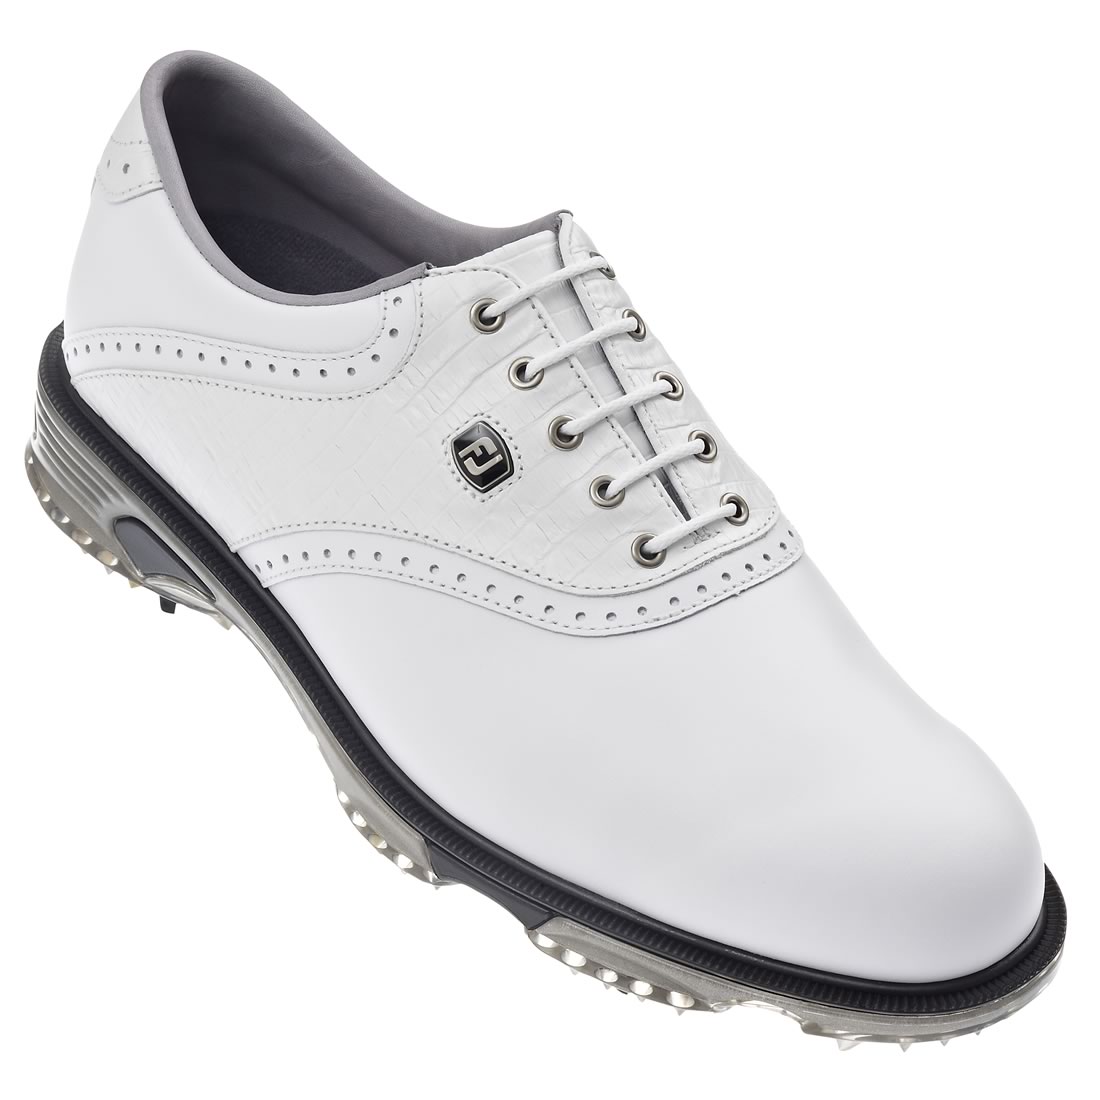 Dryjoys Tour Golf Shoes White #53607